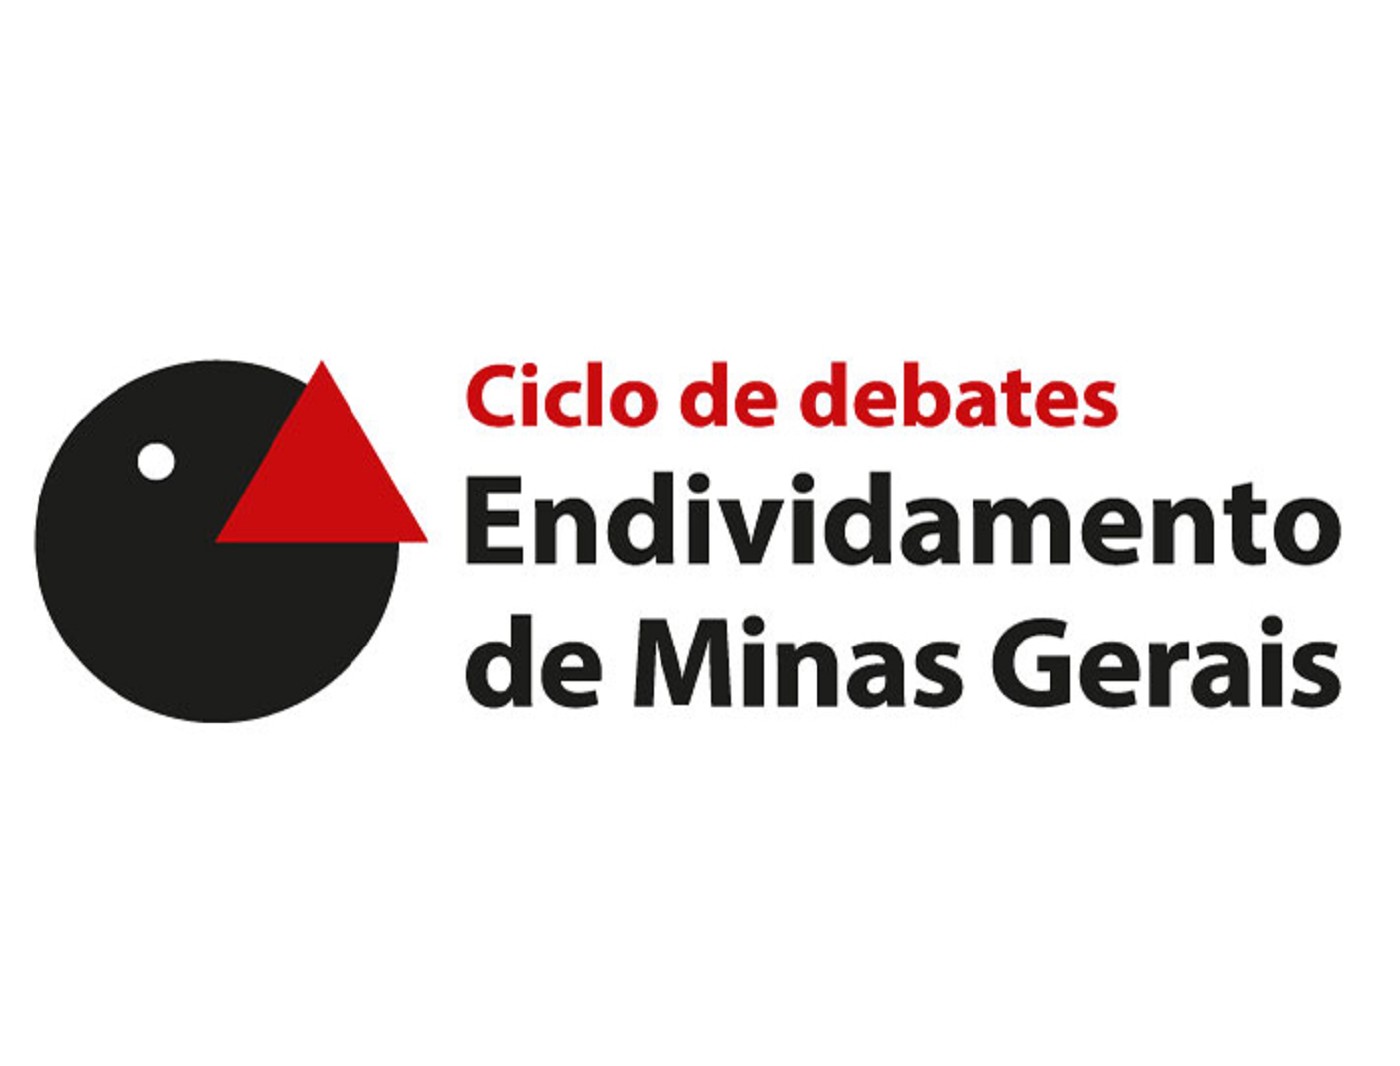 Ciclo de debates Endividamento de Minas Gerais